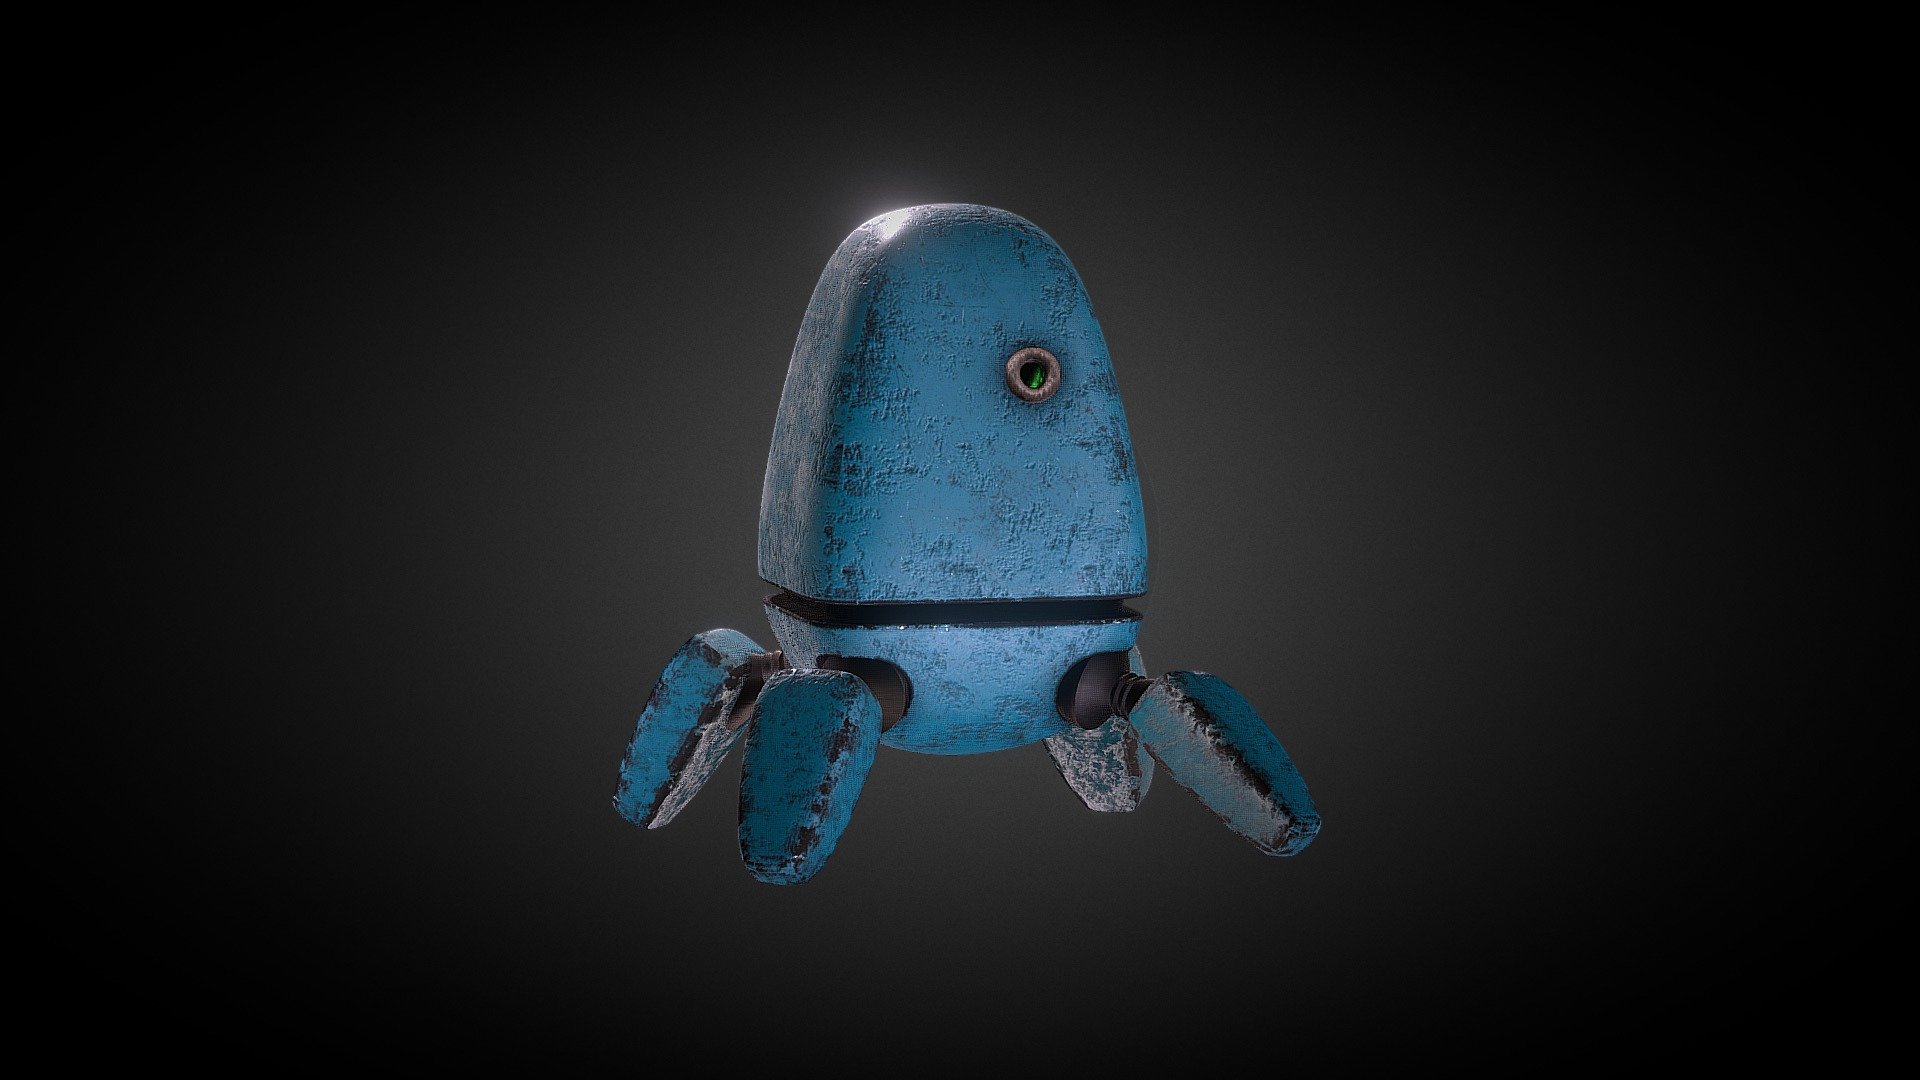 bugbot